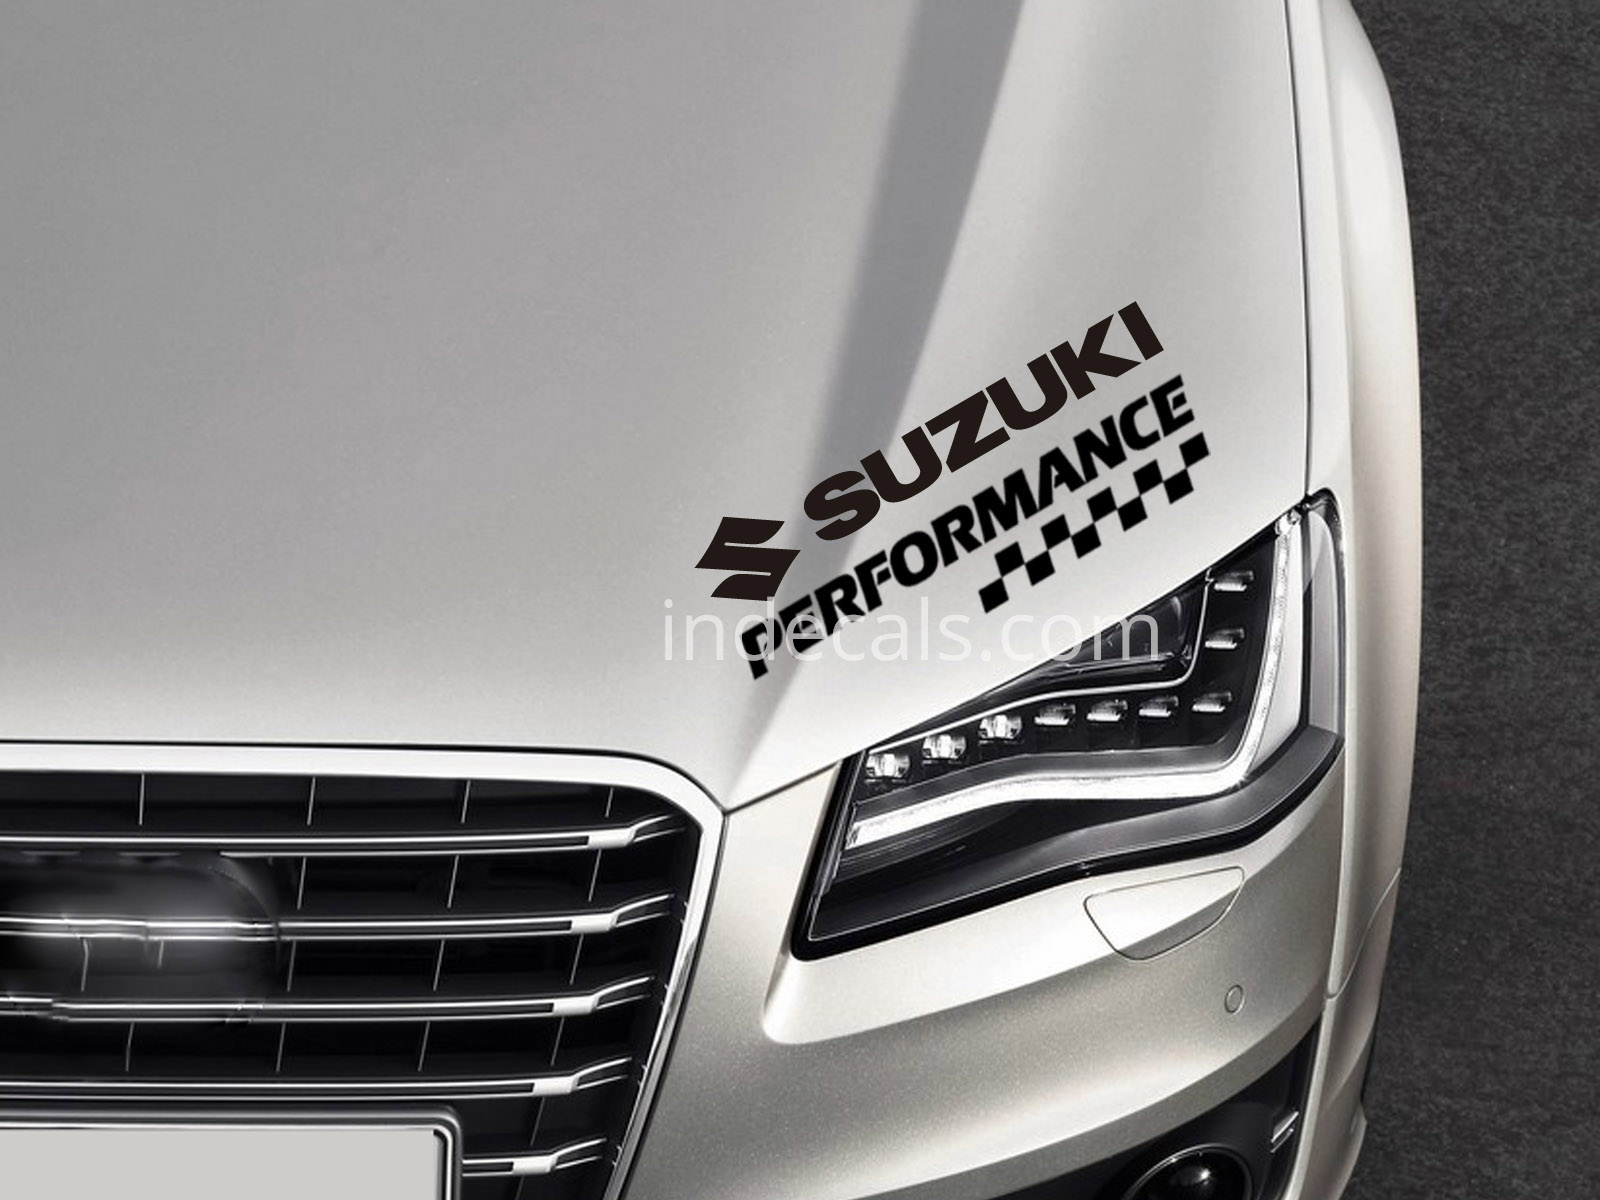 1 x Suzuki Performance Sticker - Black